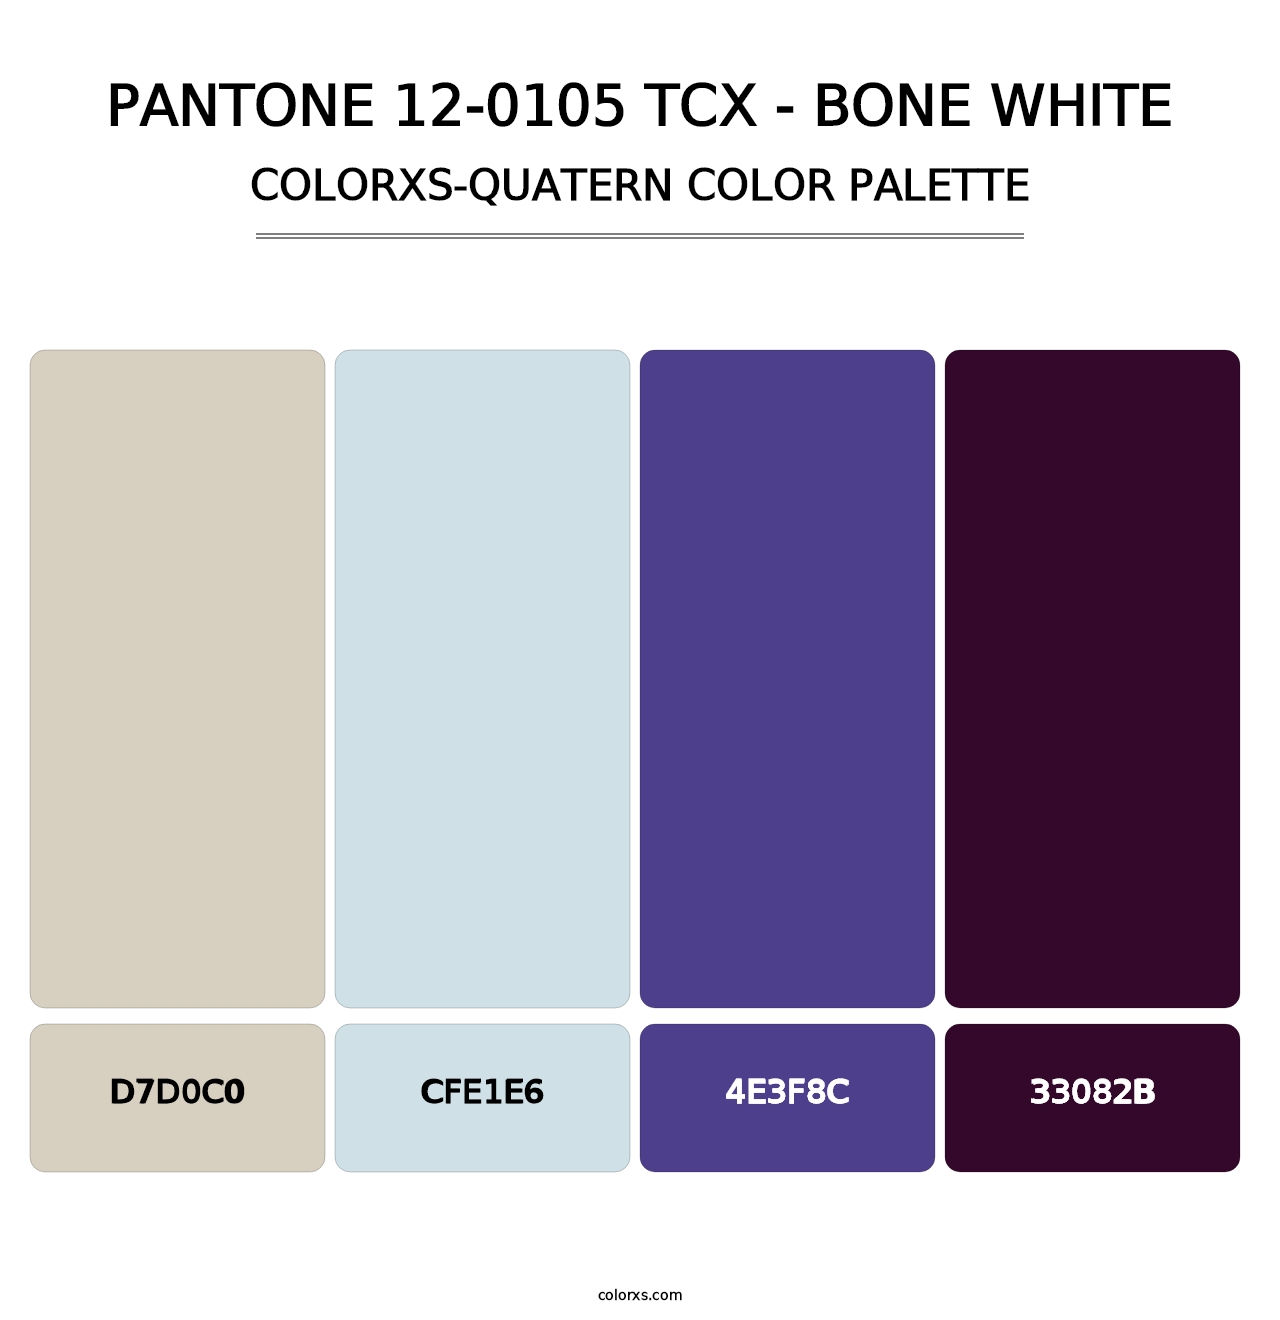 PANTONE 12-0105 TCX - Bone White - Colorxs Quatern Palette